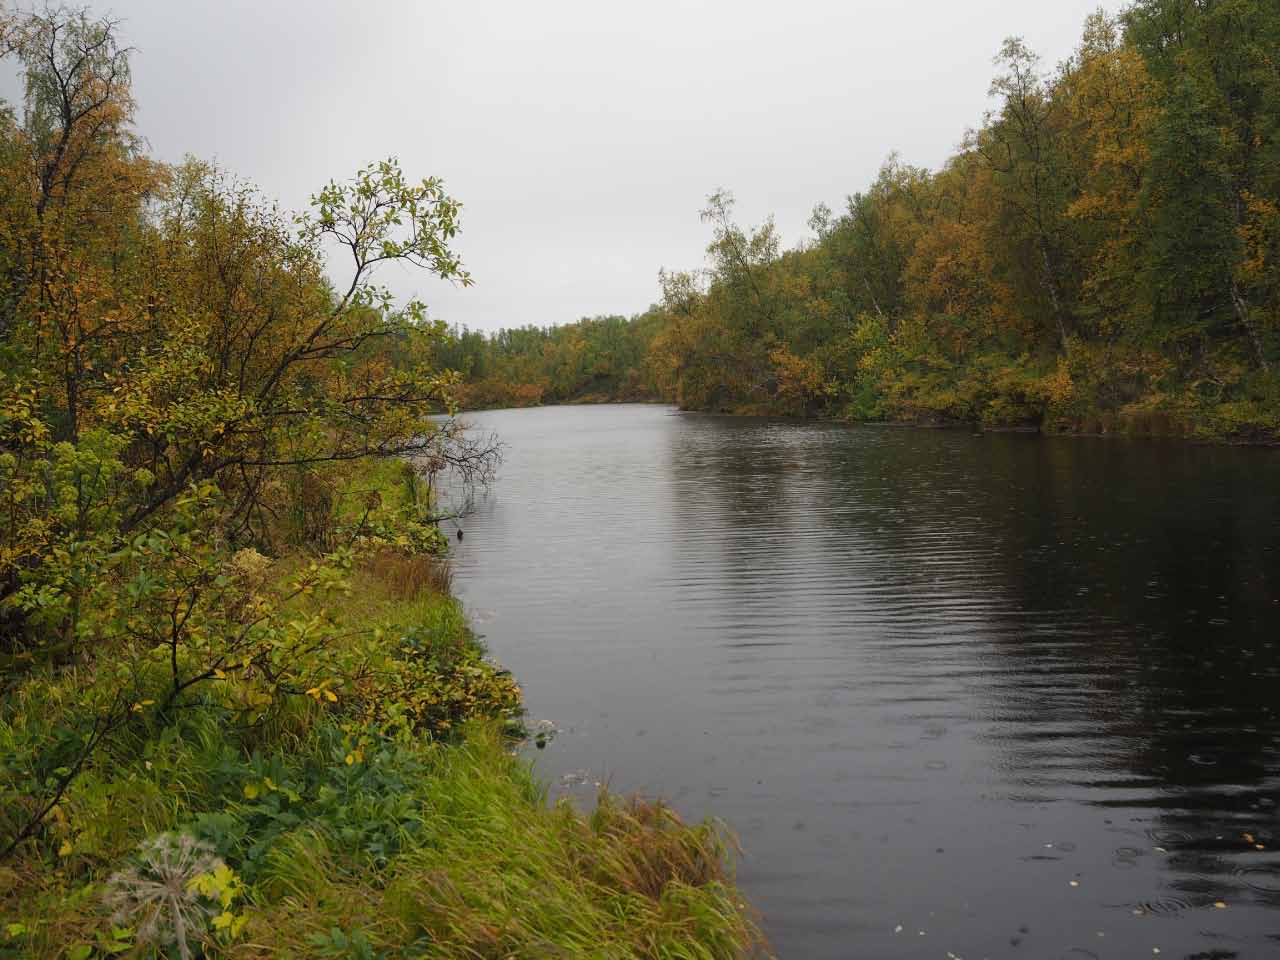 Kuva: Järven pohjassa oleva lähdealue itäosassa, kuvattu eteläkaakosta. Petri Halinen 1.9.2021